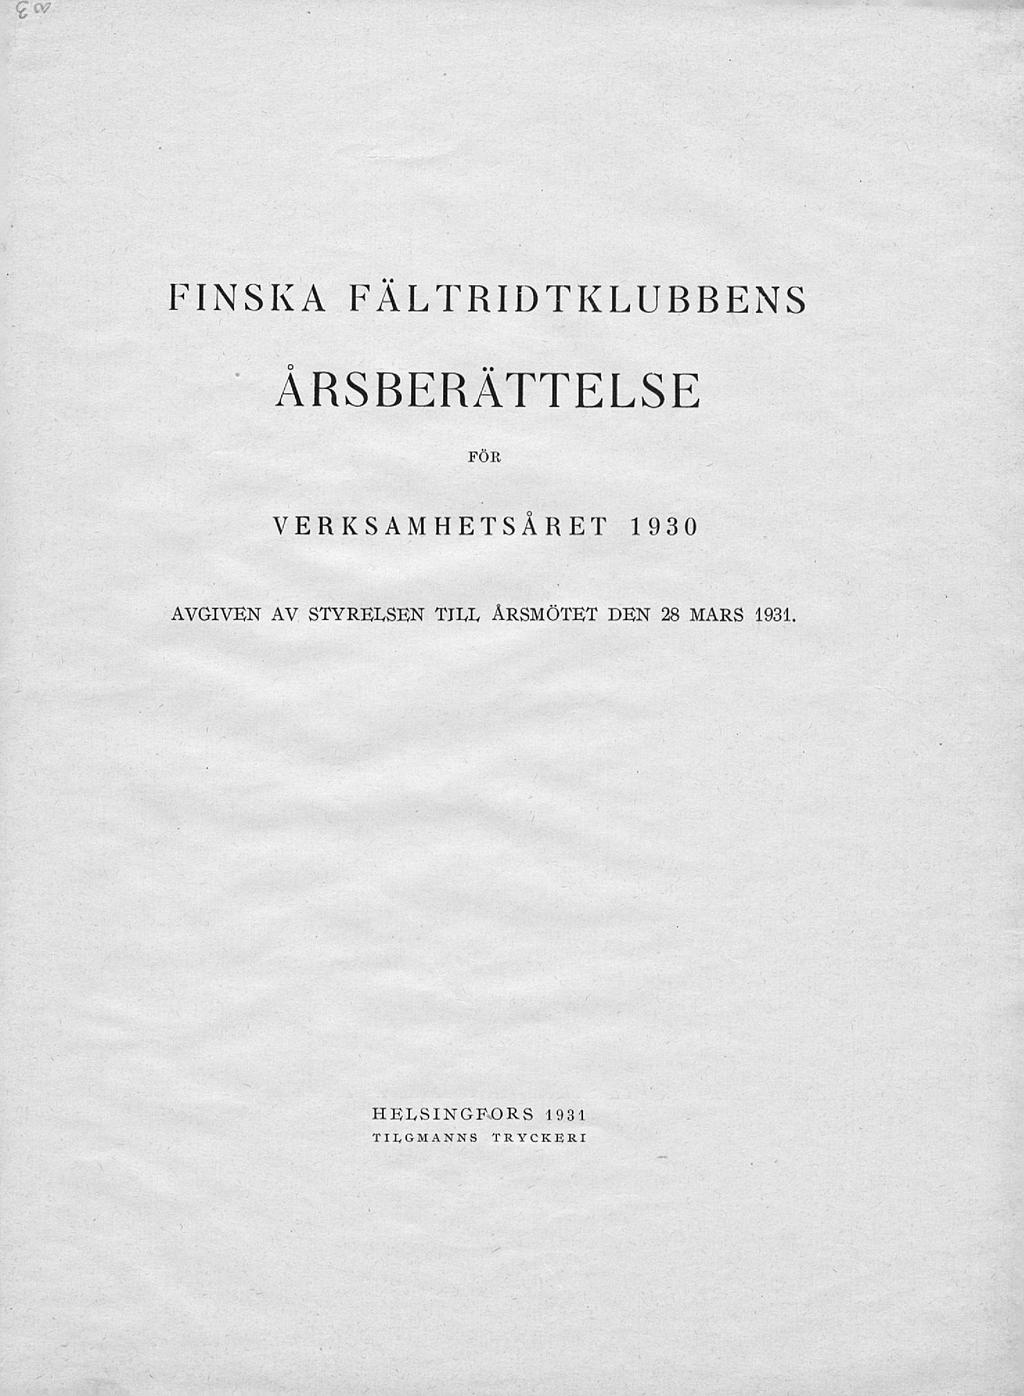 CV FINSKA FÄLTRIDTKLUBBENS ÅRSBERÄTTELSE FÖR VERKSAMHETSÅRET 1930 AVGIVEN AV